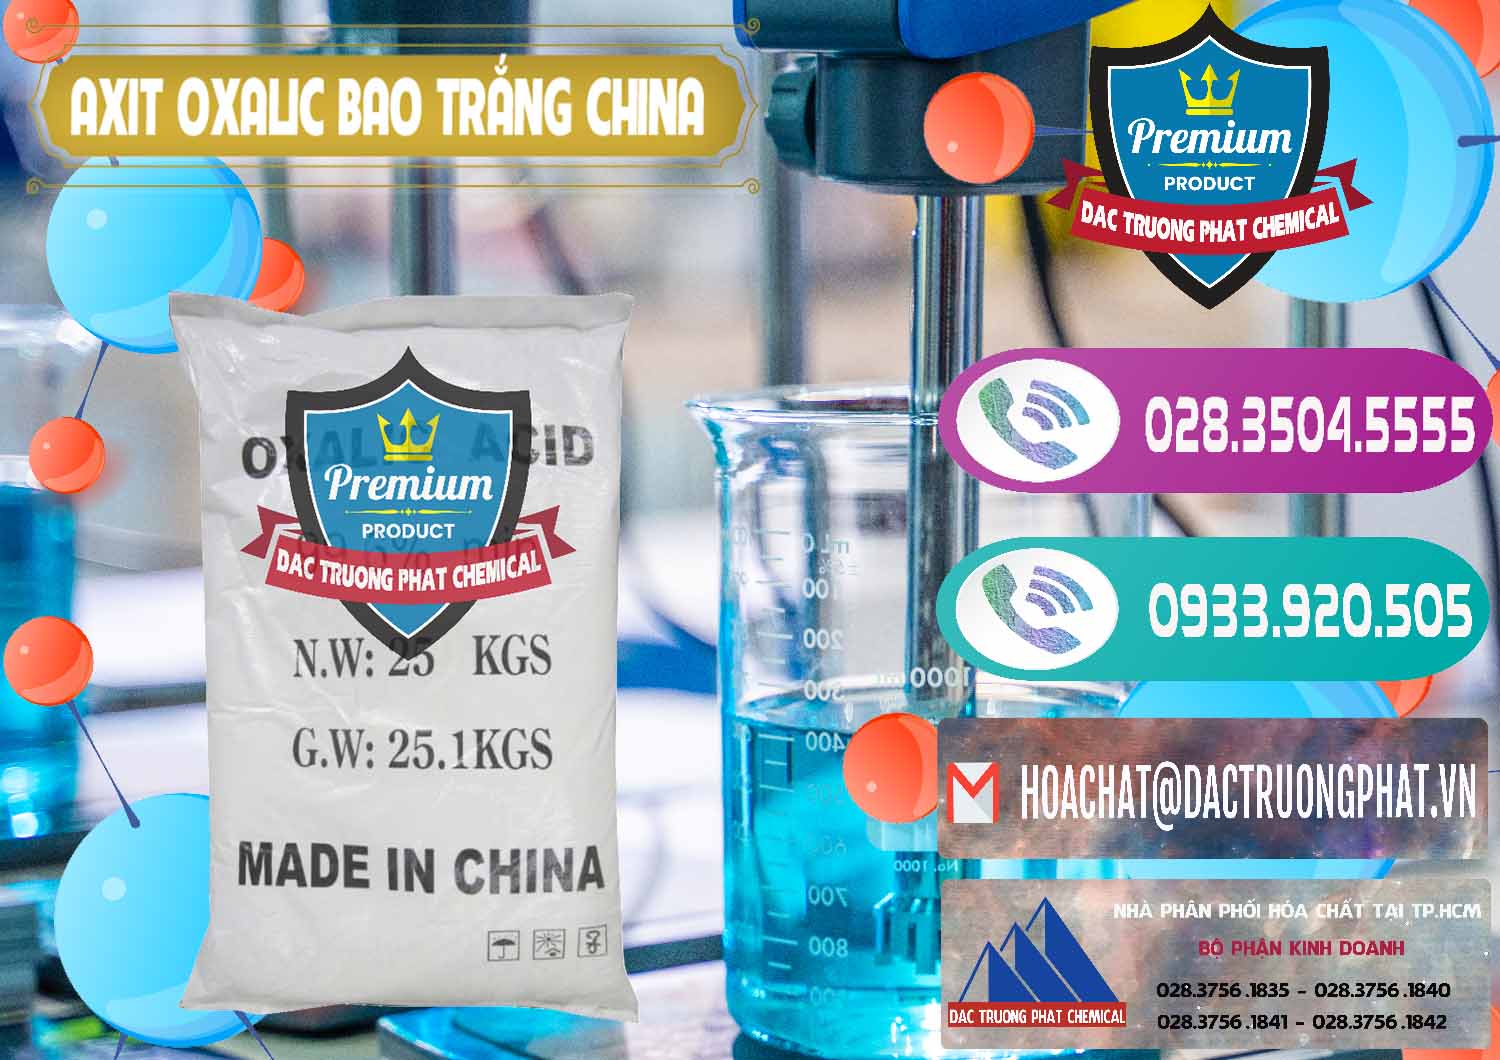 Đơn vị chuyên cung cấp ( bán ) Acid Oxalic – Axit Oxalic 99.6% Bao Trắng Trung Quốc China - 0270 - Công ty kinh doanh & cung cấp hóa chất tại TP.HCM - hoachatxulynuoc.com